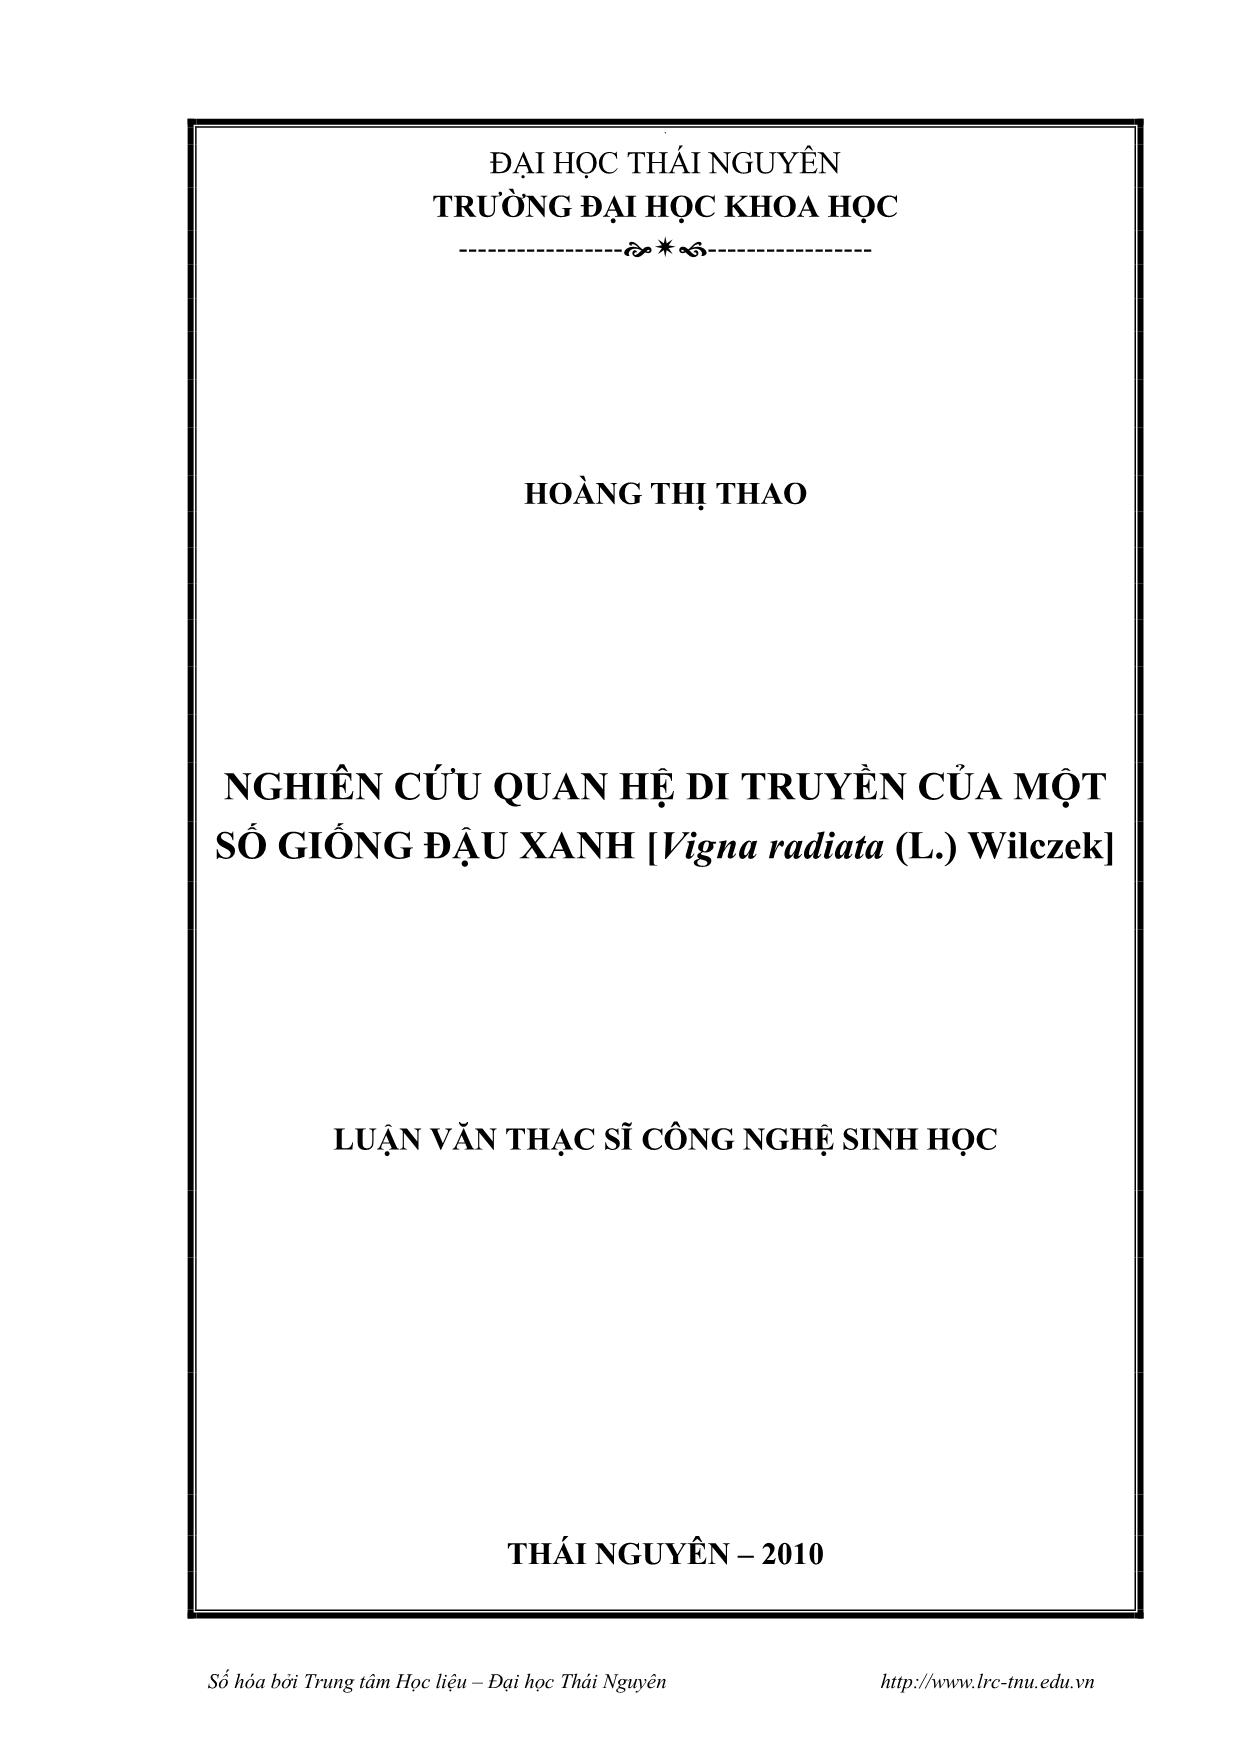 Luận văn Nghiên cứu quan hệ di truyền của một số giống đậu xanh [Vigna radiata (L.) Wilczek] trang 1